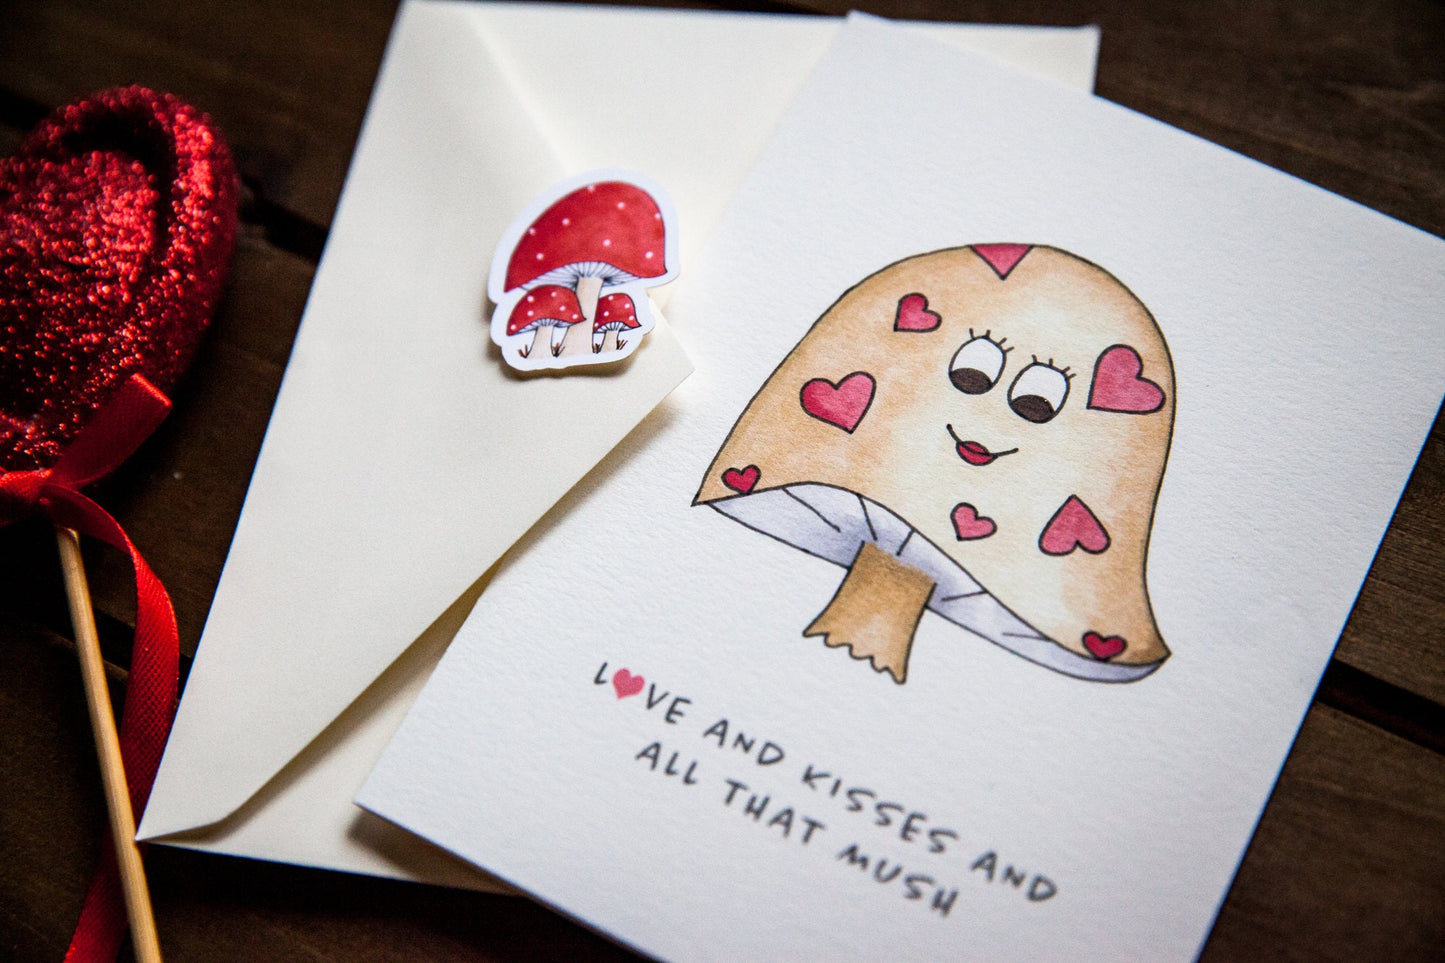 Love and Kisses Mushroom Card